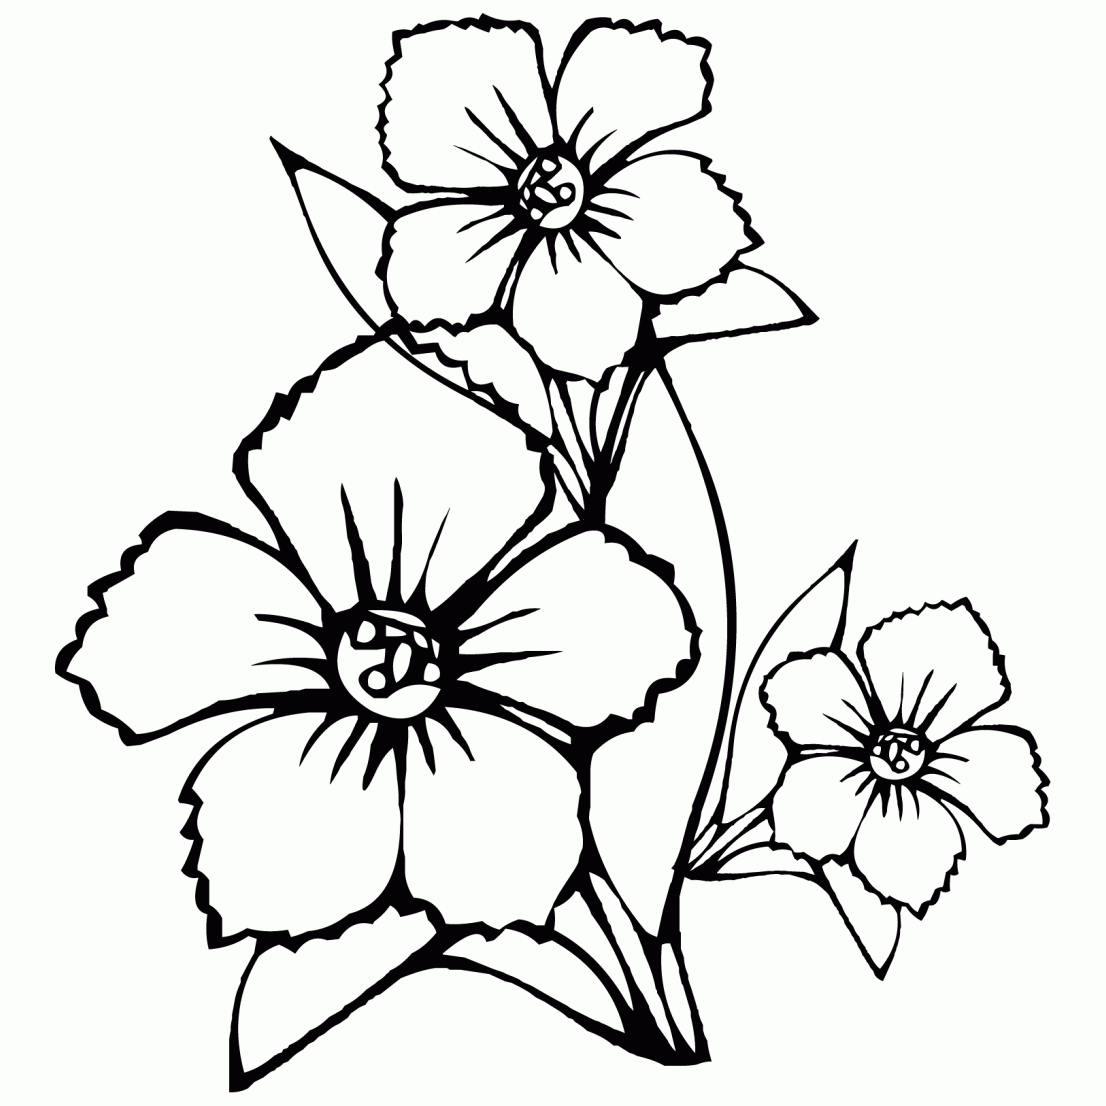 Dibujos de flores de 5 petalos para colorear